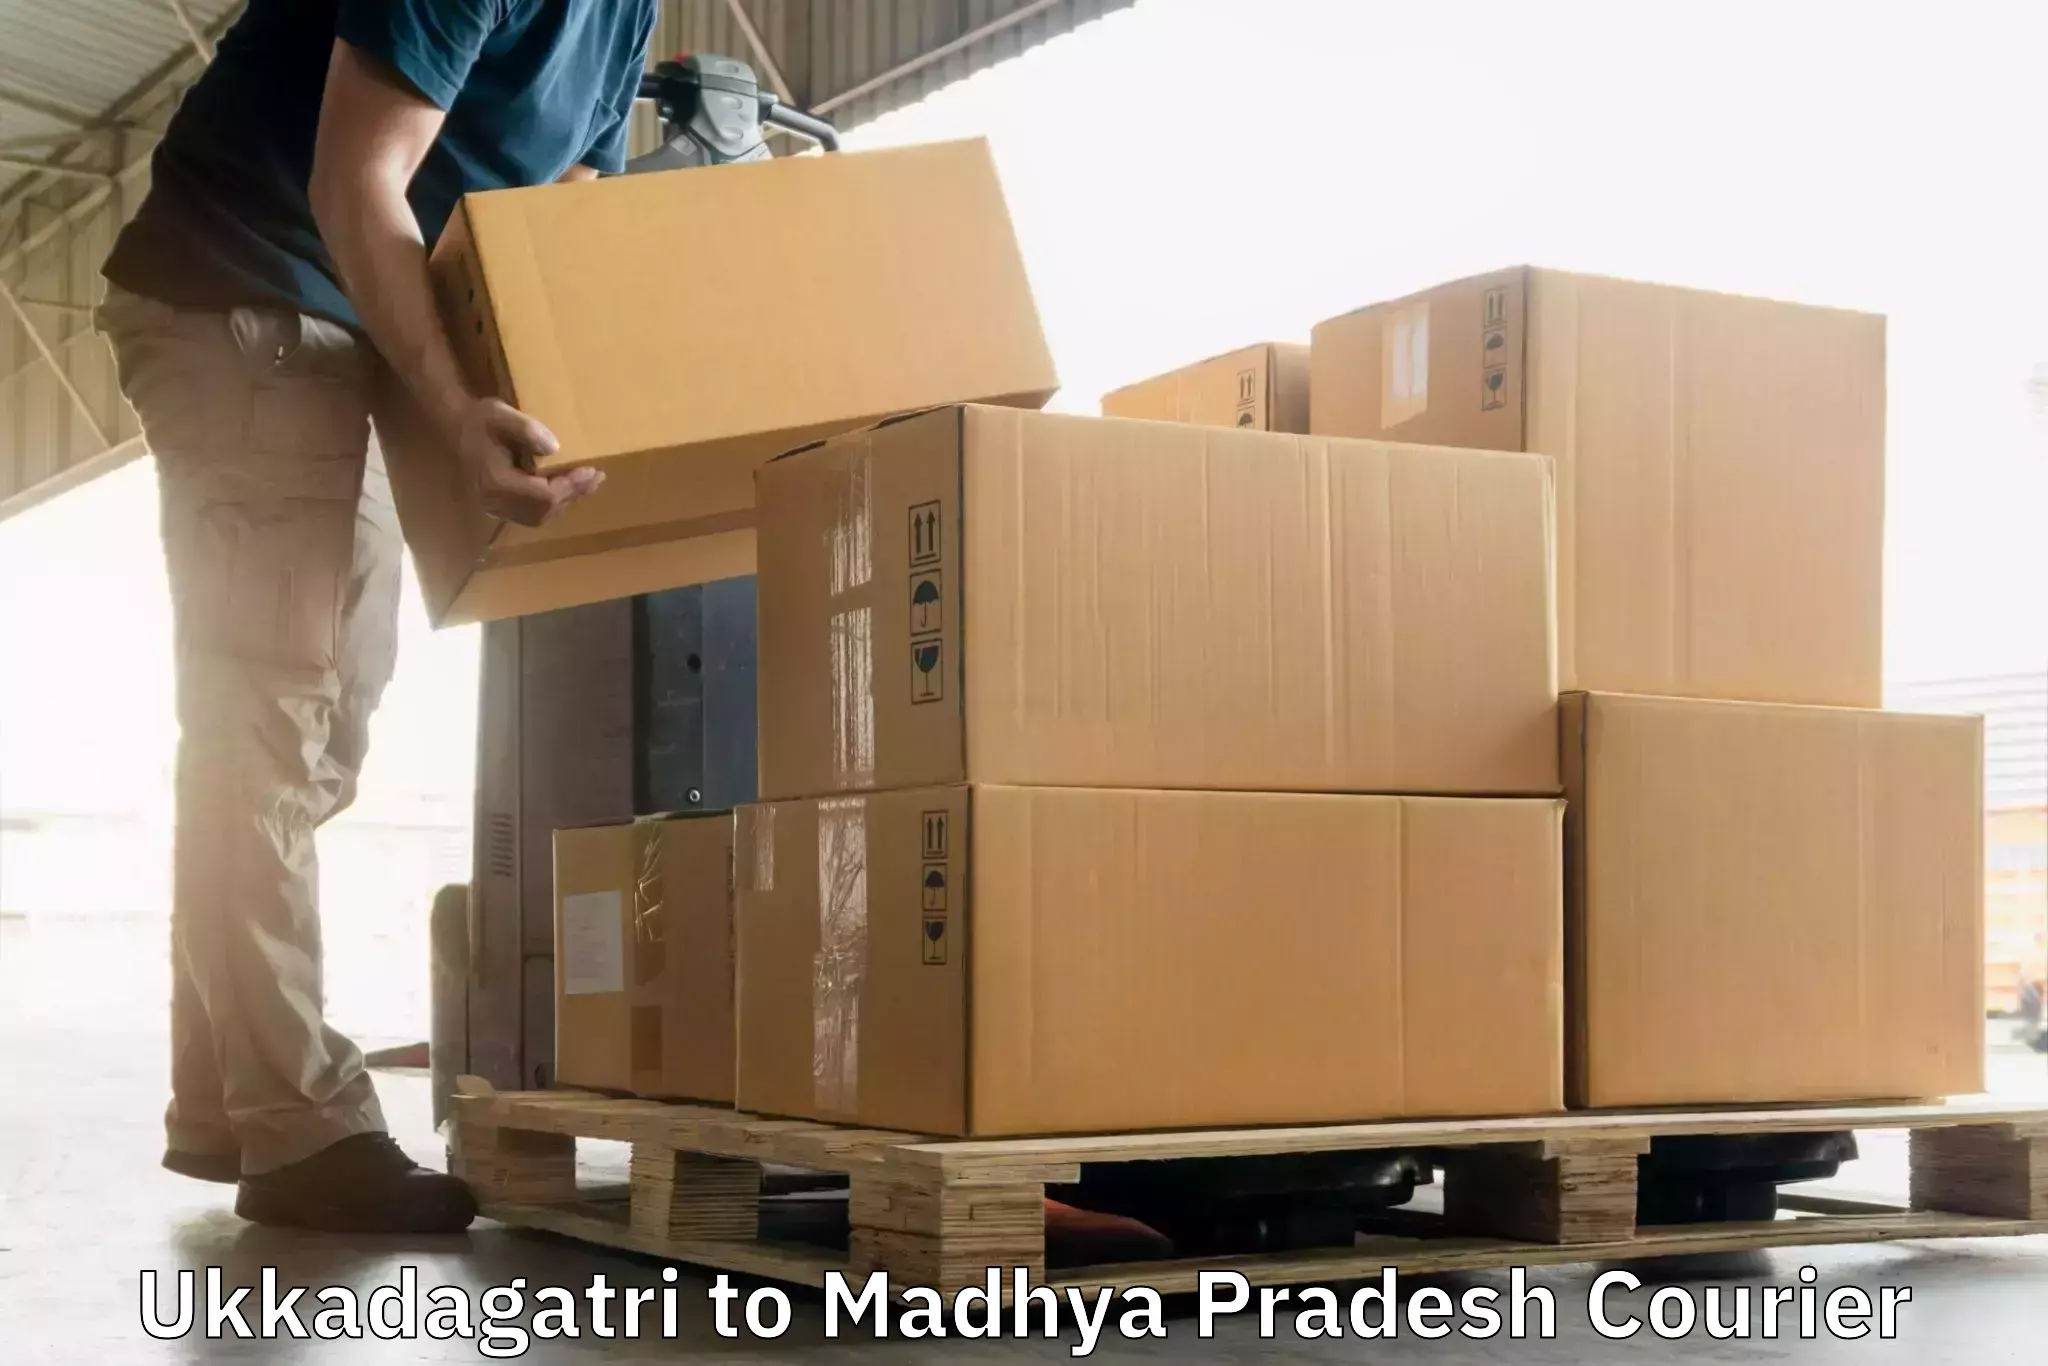 Custom courier packaging Ukkadagatri to Rewa